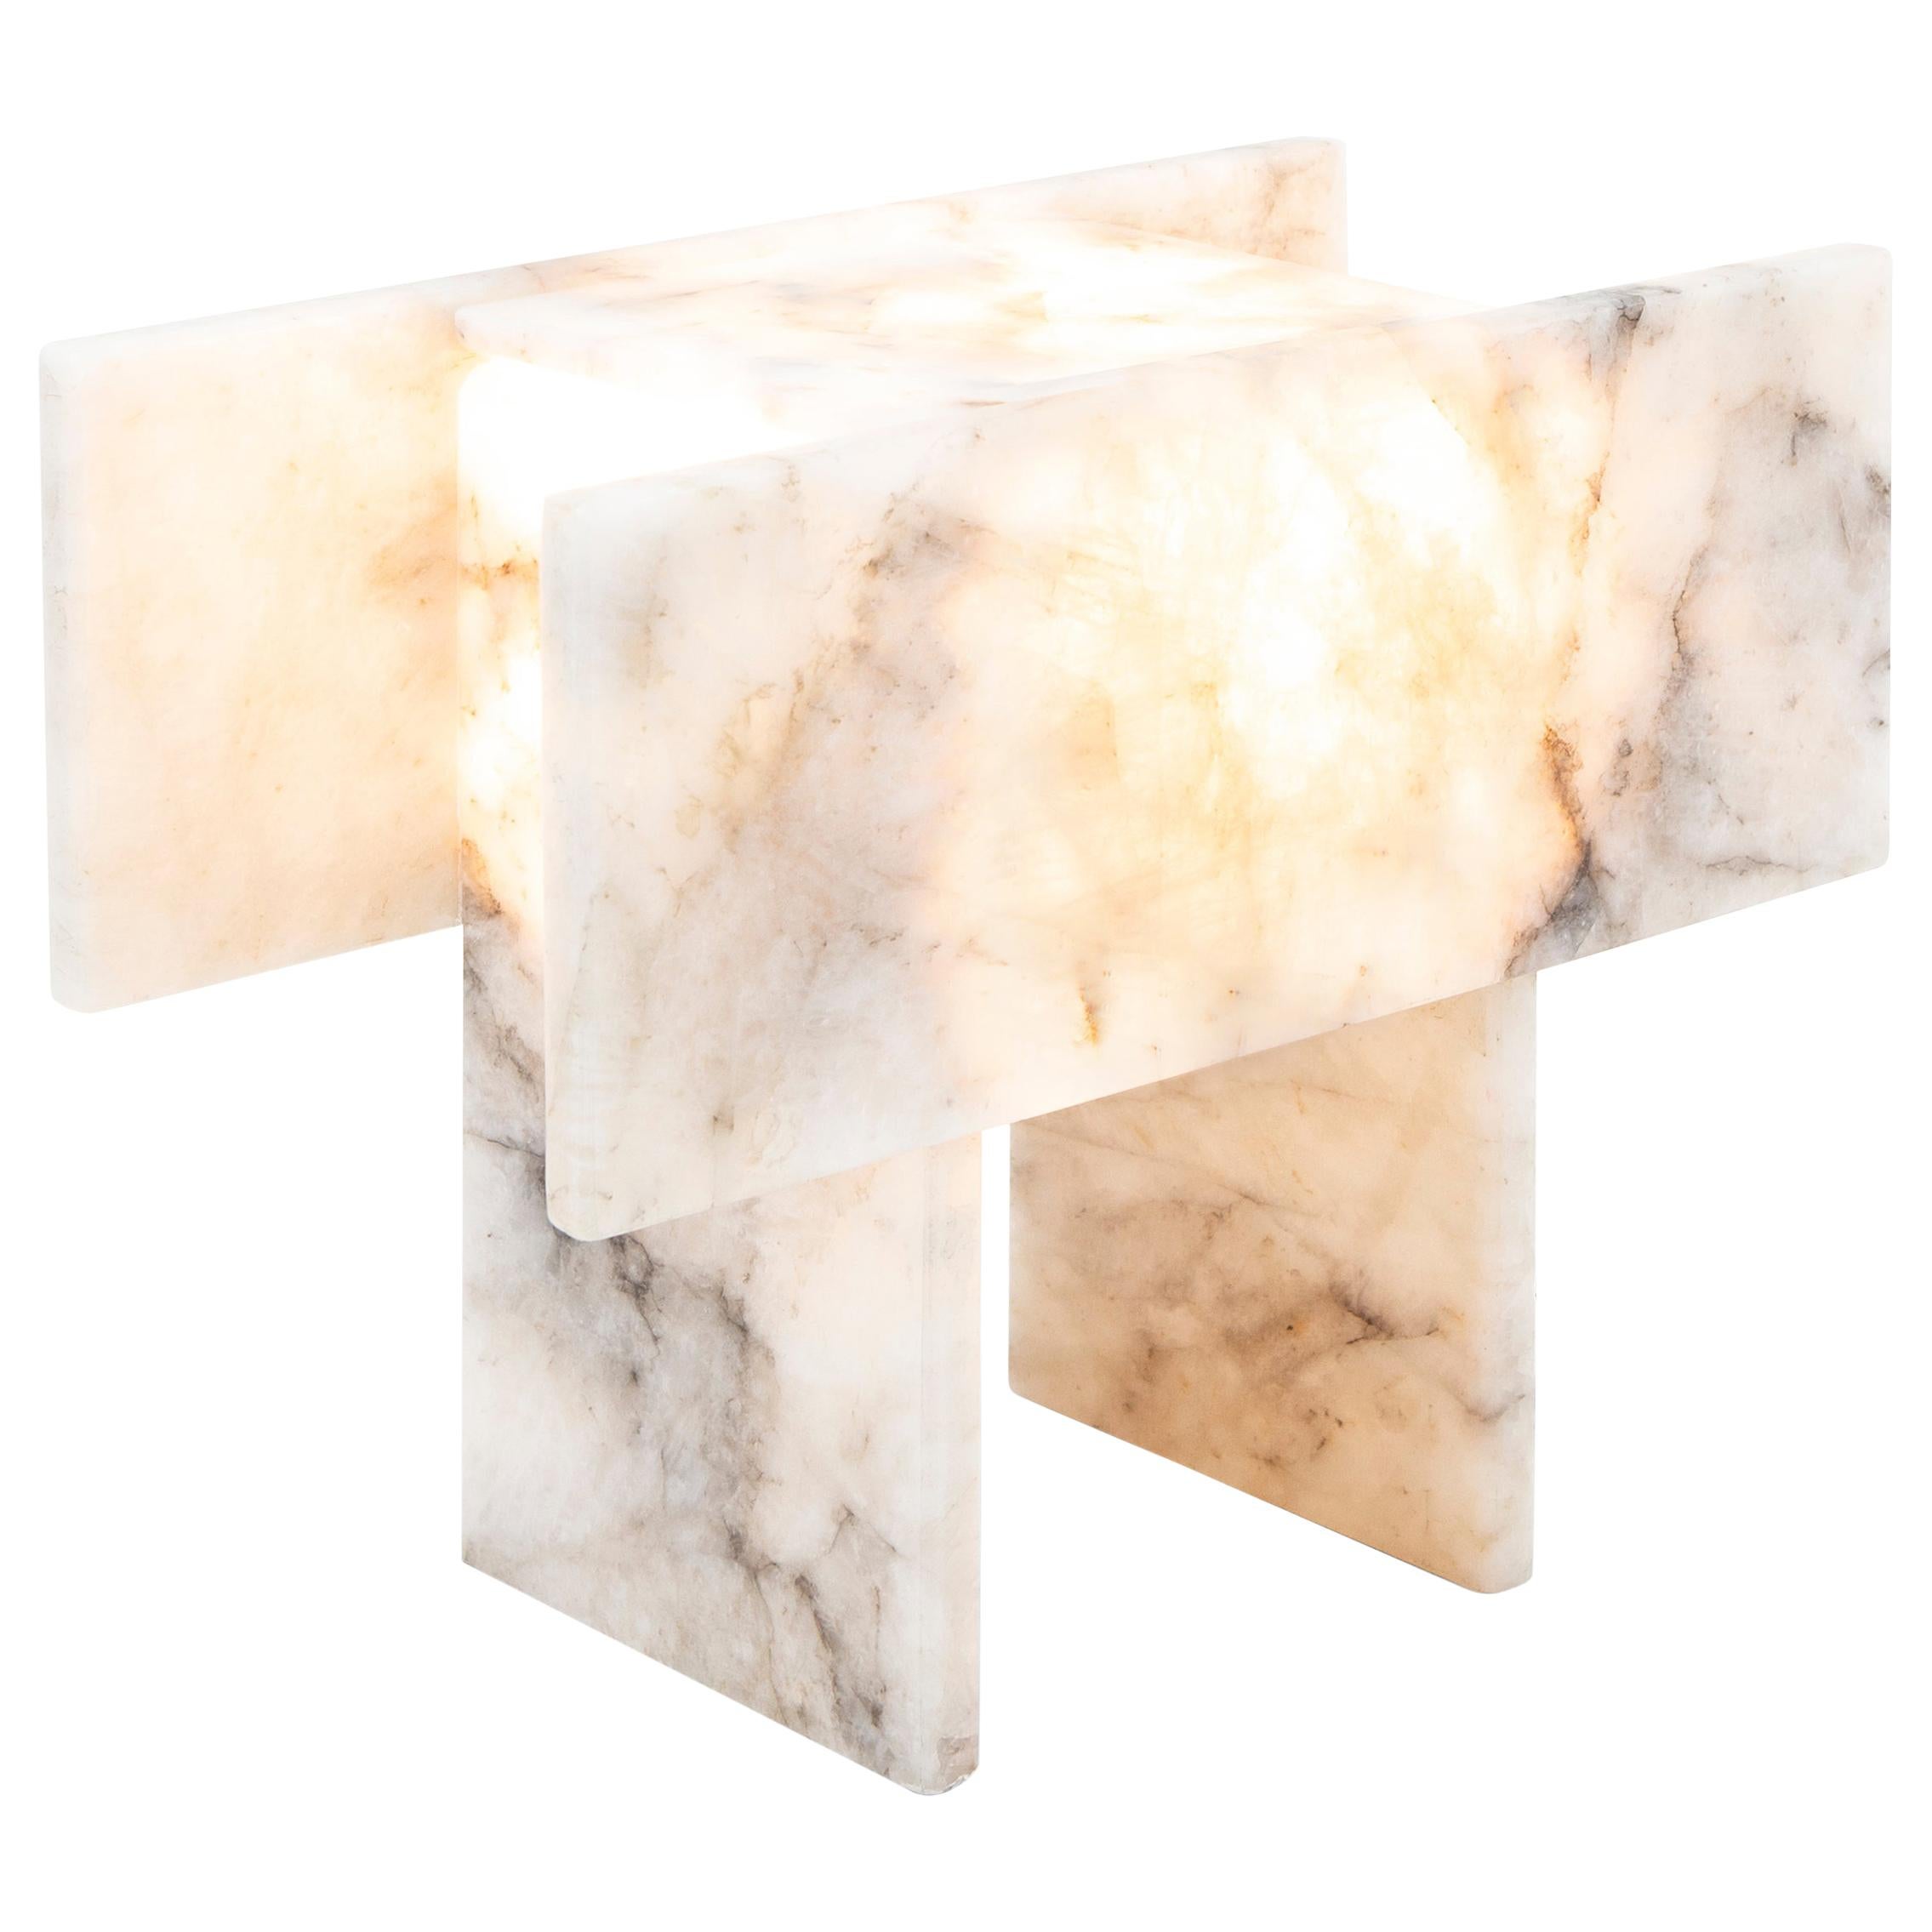 Il s'agit de la lampe de table Pedrita (Modèle S) et elle fait partie de la série de lampes Pedrita.
Le concept de la série de lampes Pedrita est basé sur l'expérimentation de pierres brésiliennes : les quartzites et les cristaux de quartz, qui sont